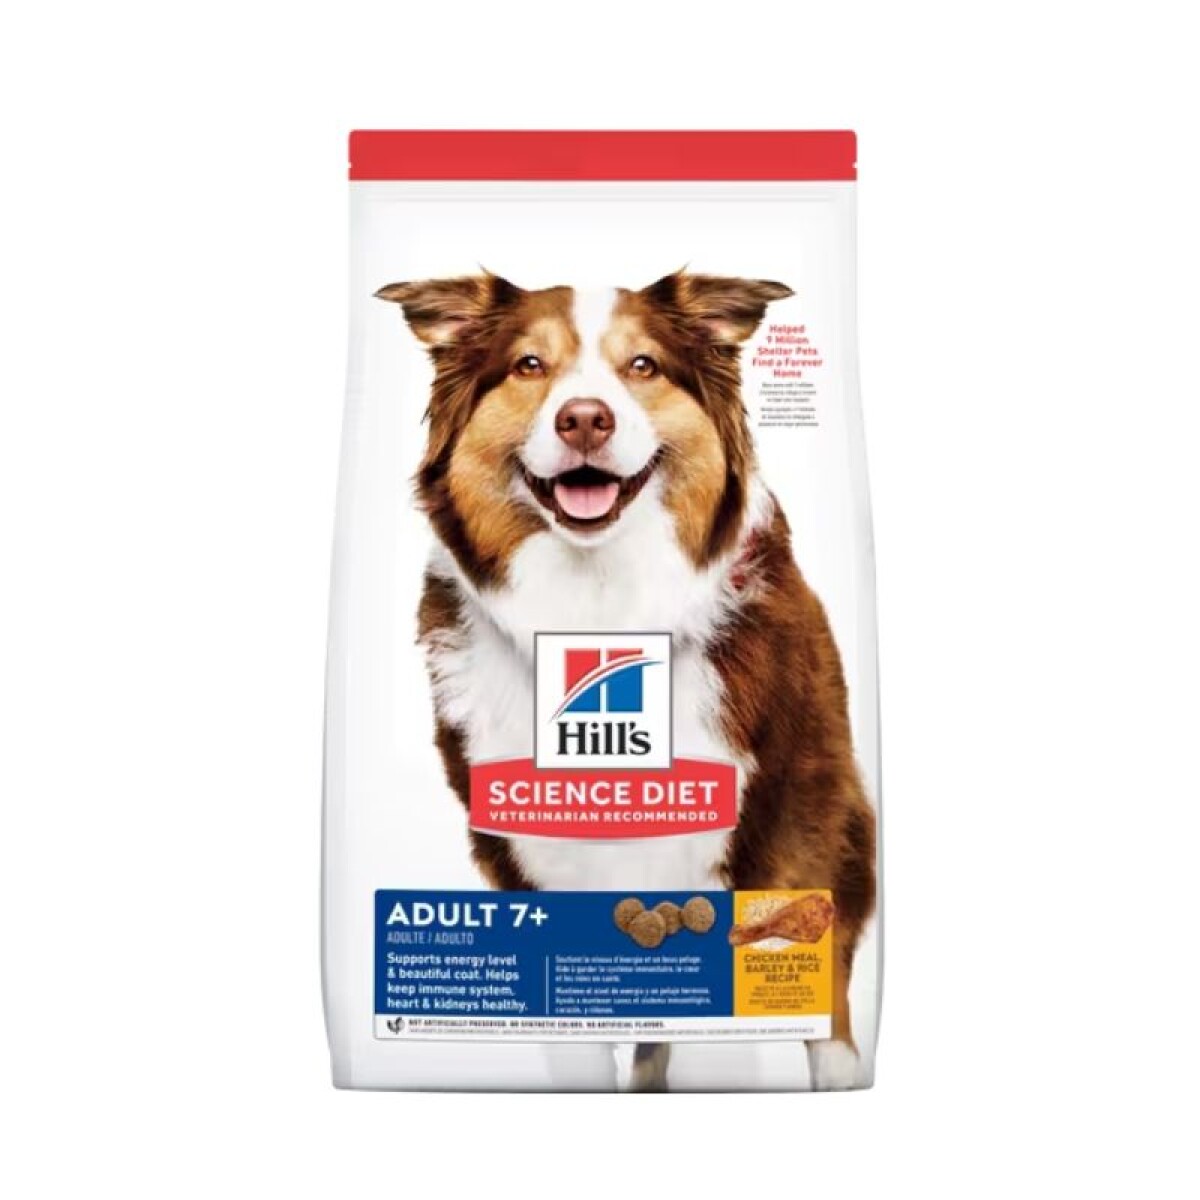 HILLS CANINE ADULT 7+ ORIGINAL 12KG - Hills Canine Adult 7+ Original 12kg 